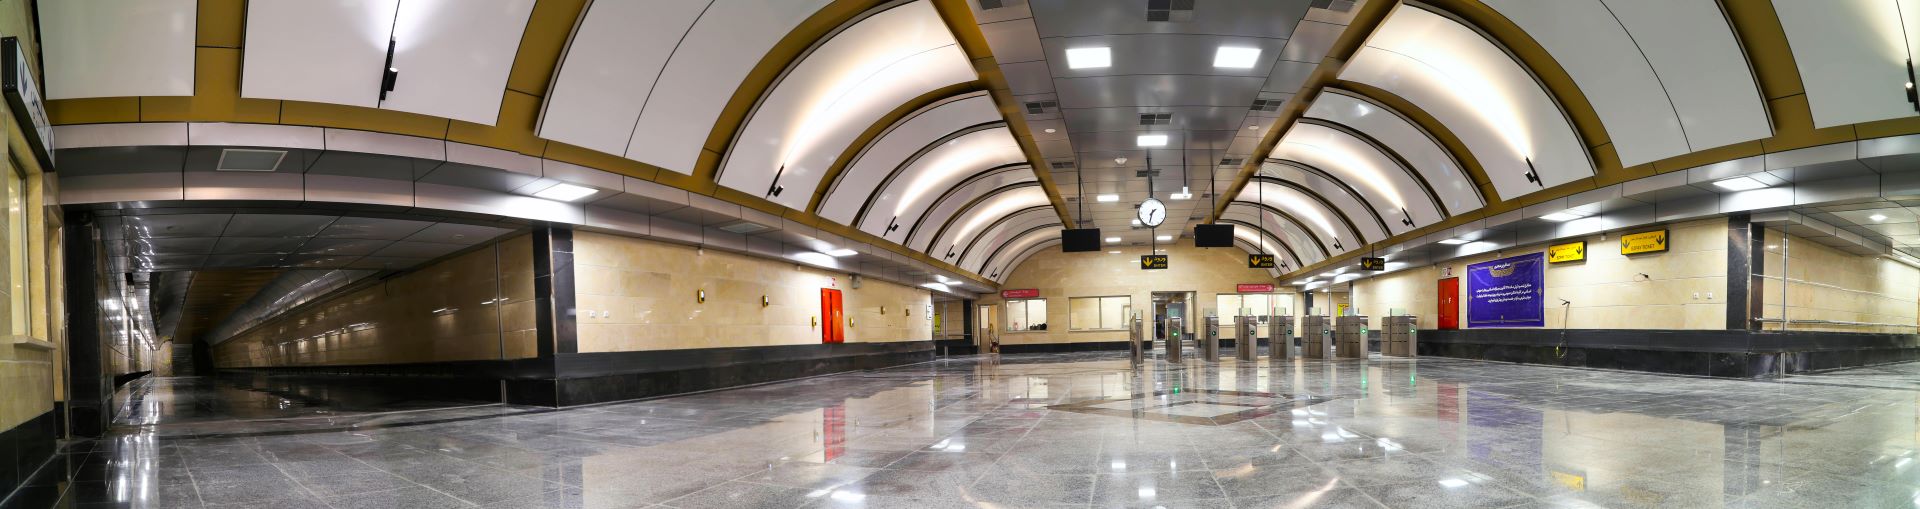 ایستگاه شهر زیبا - خط 6 متروی تهران